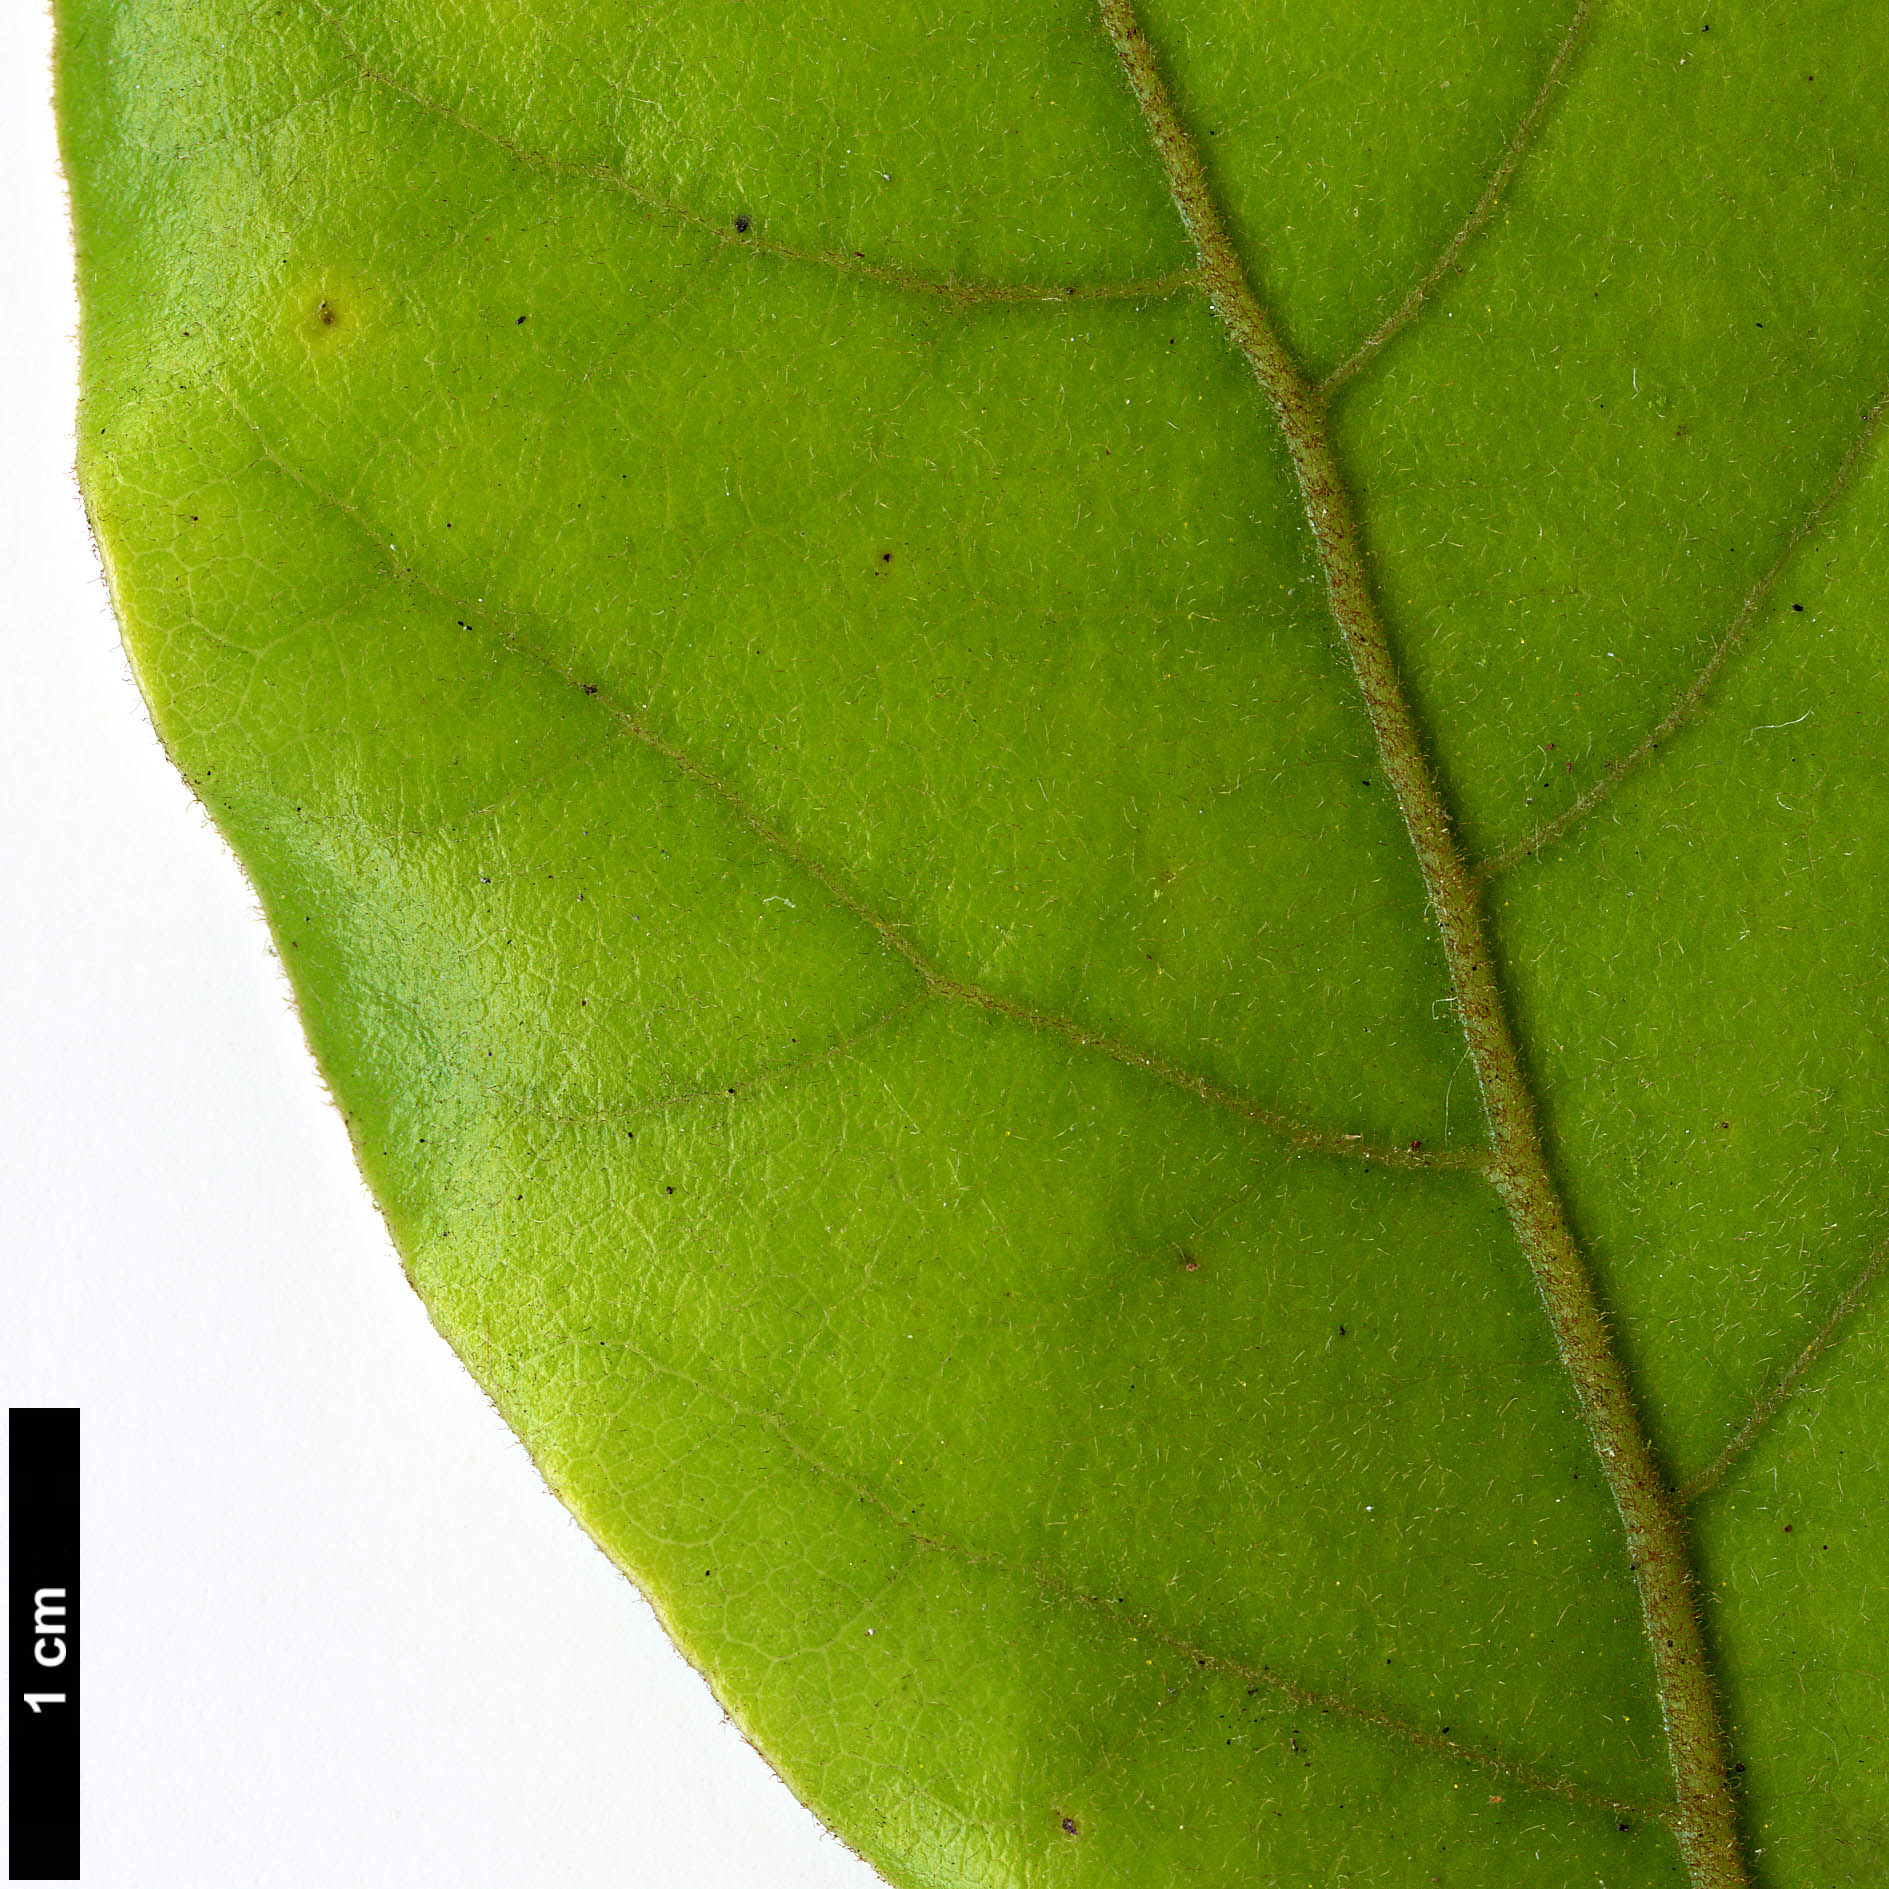 High resolution image: Family: Lauraceae - Genus: Beilschmiedia - Taxon: tarairi